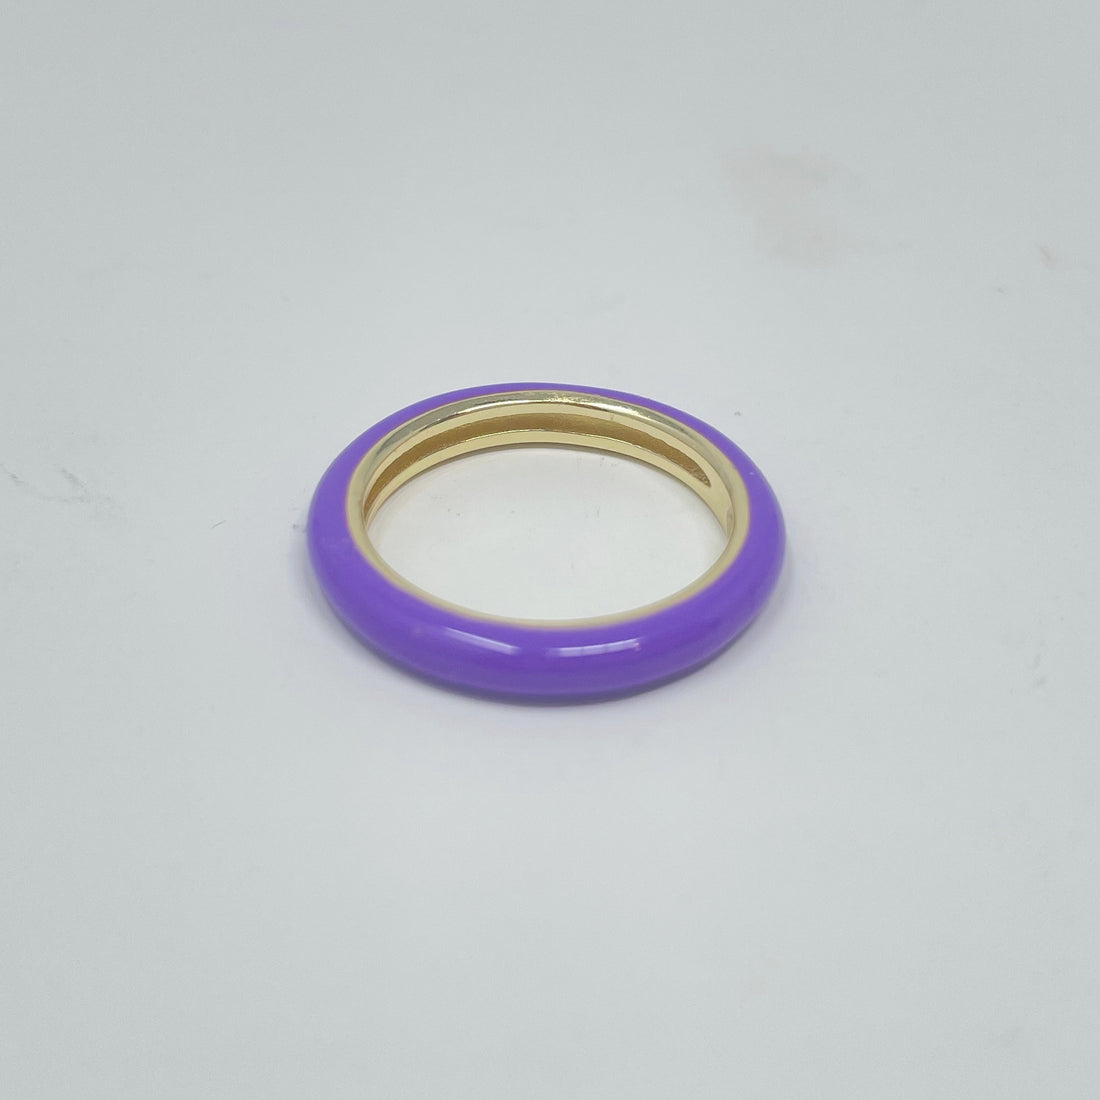 Enamel Ring in Bright Purple